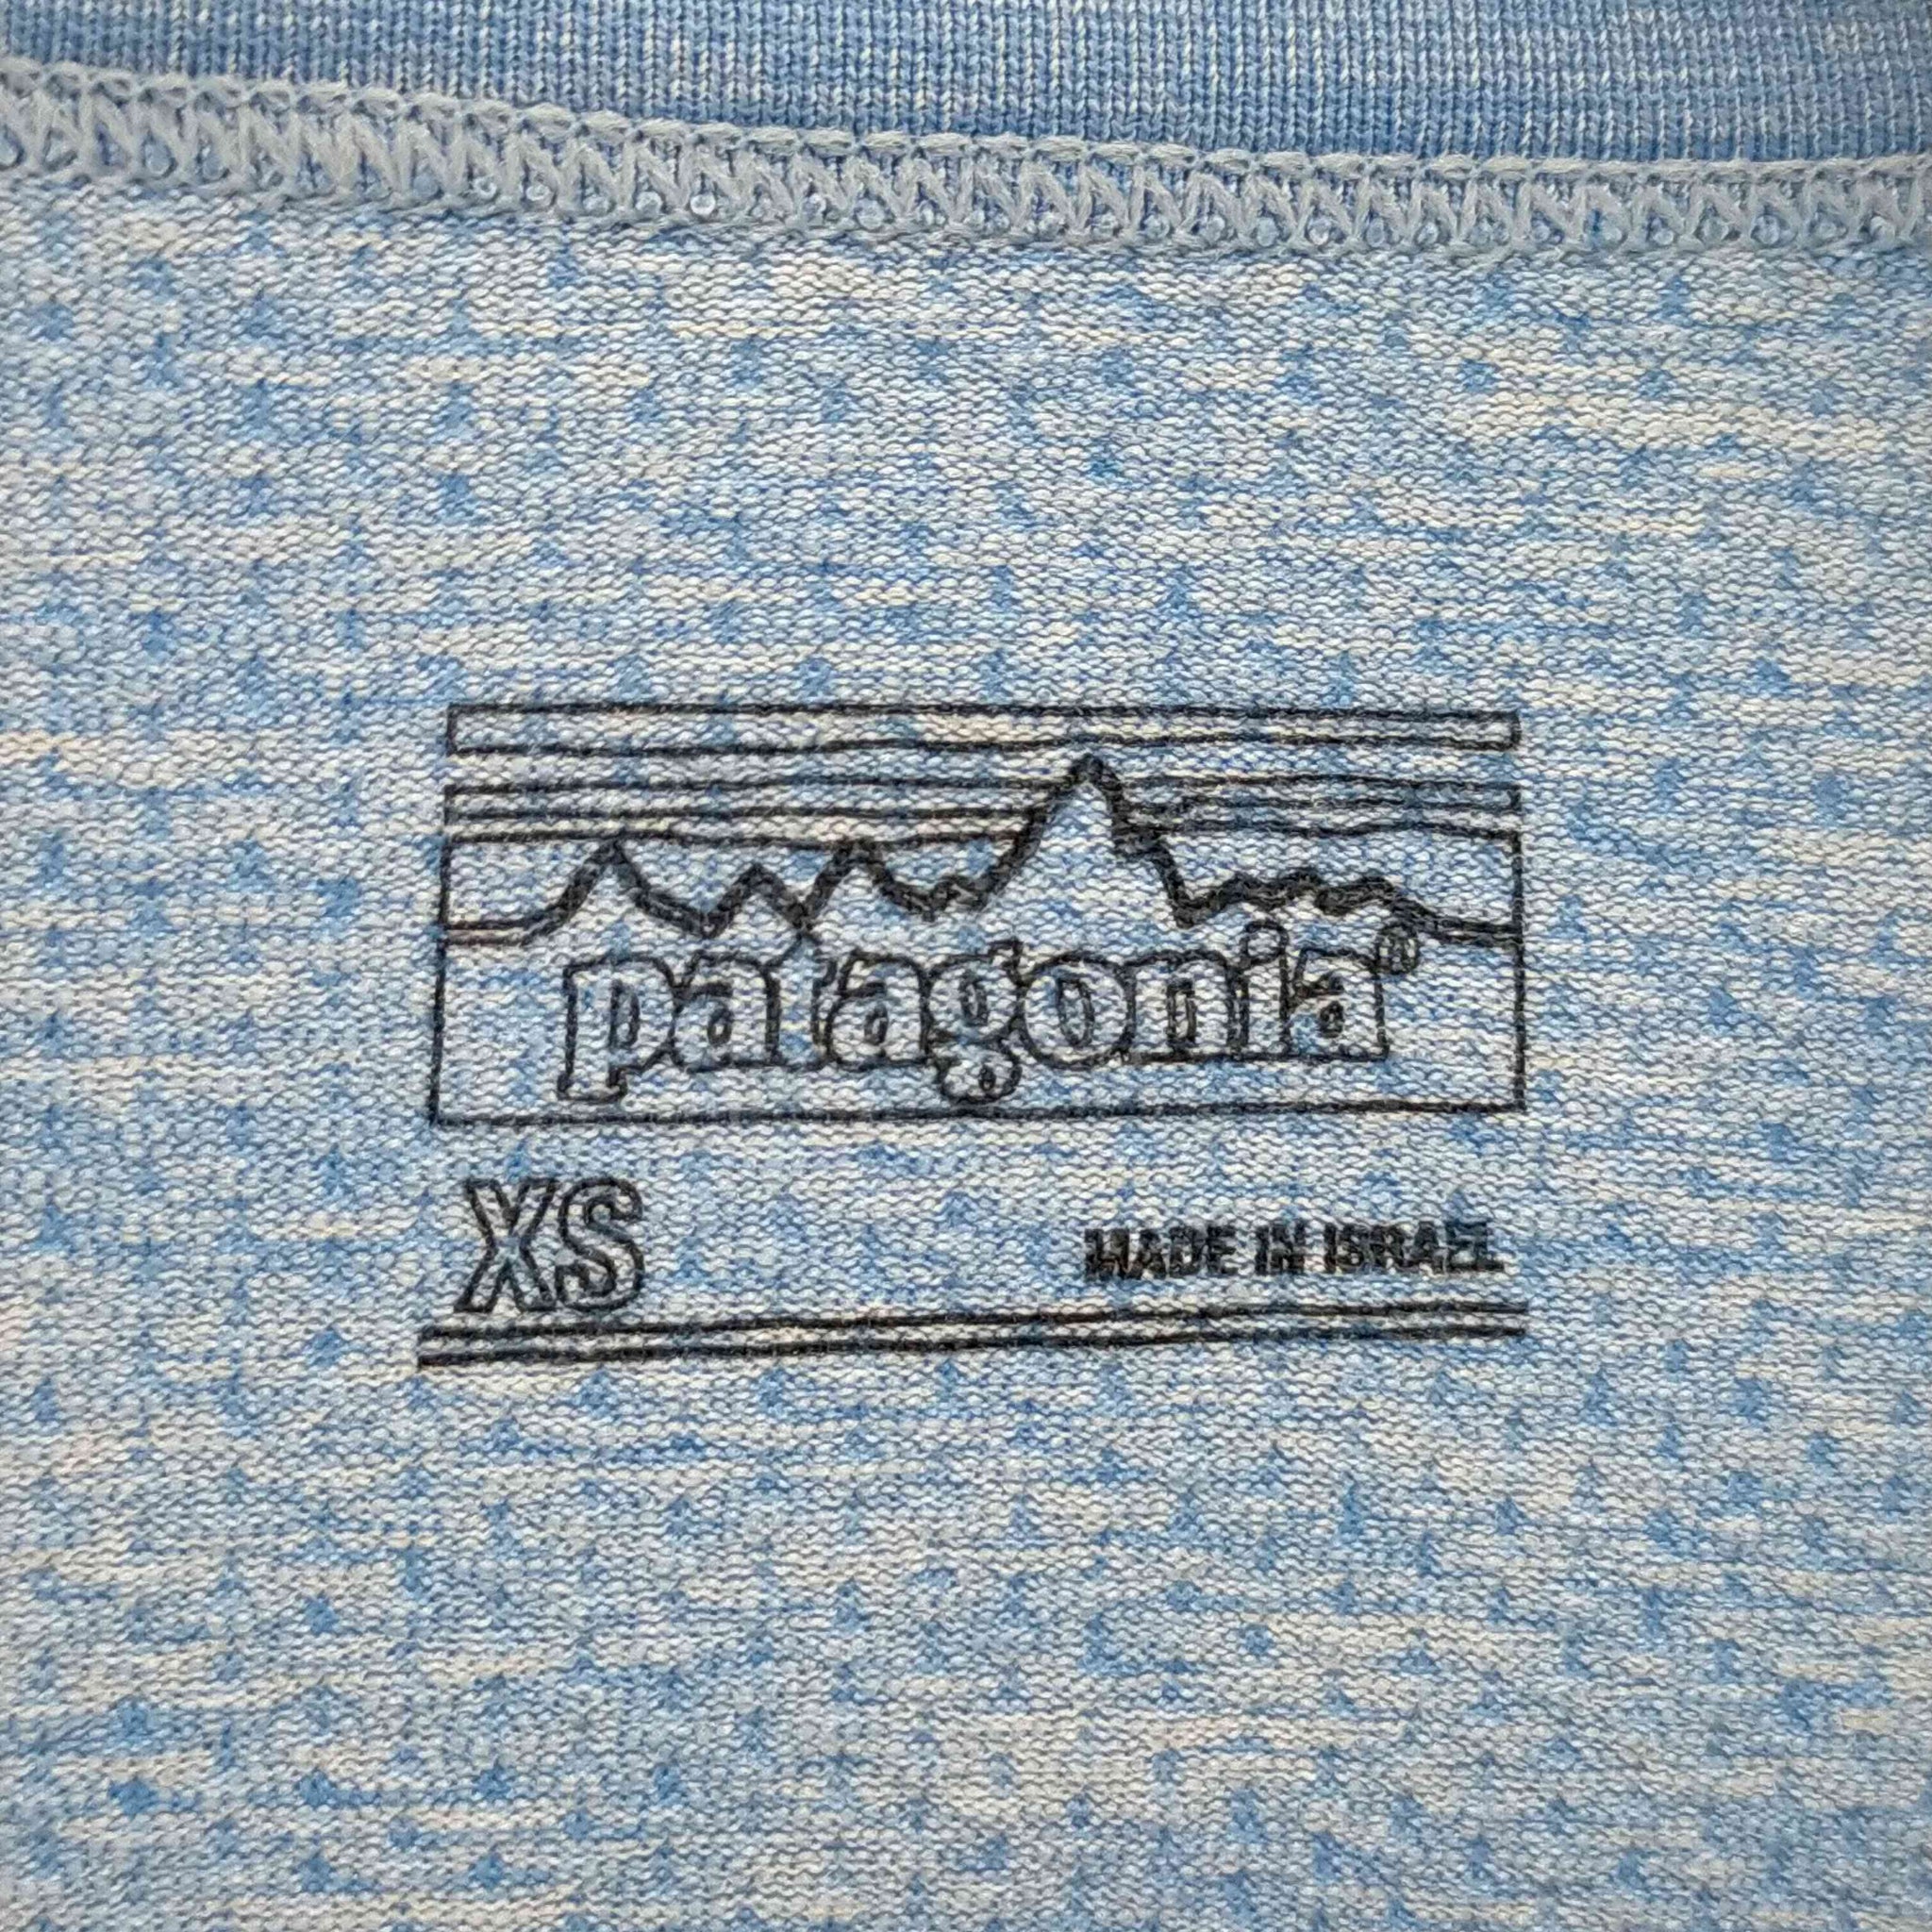 patagonia(パタゴニア)トレーニングボーダーカットソー